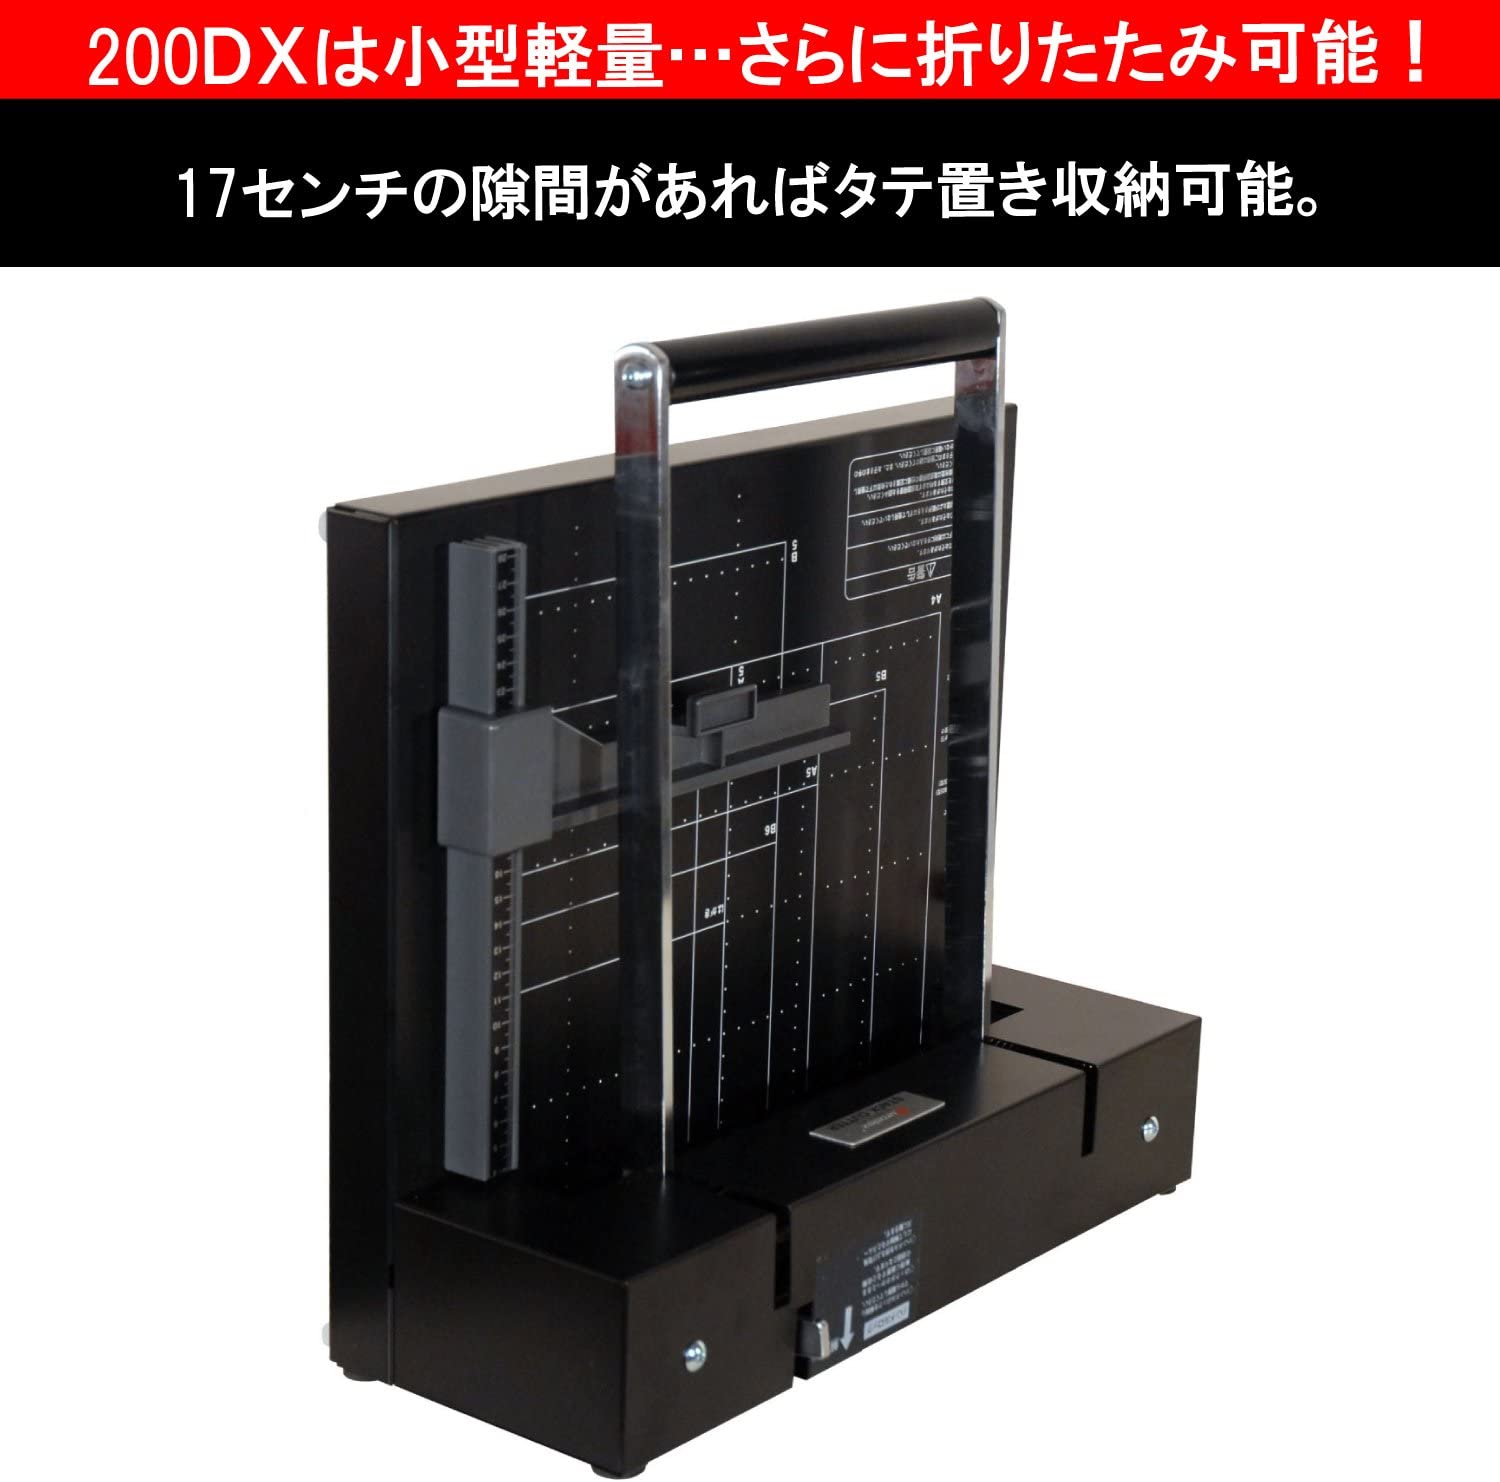 独特の素材 nakamasa-store2号店DURODEX 自炊裁断機 ブラック 200DX